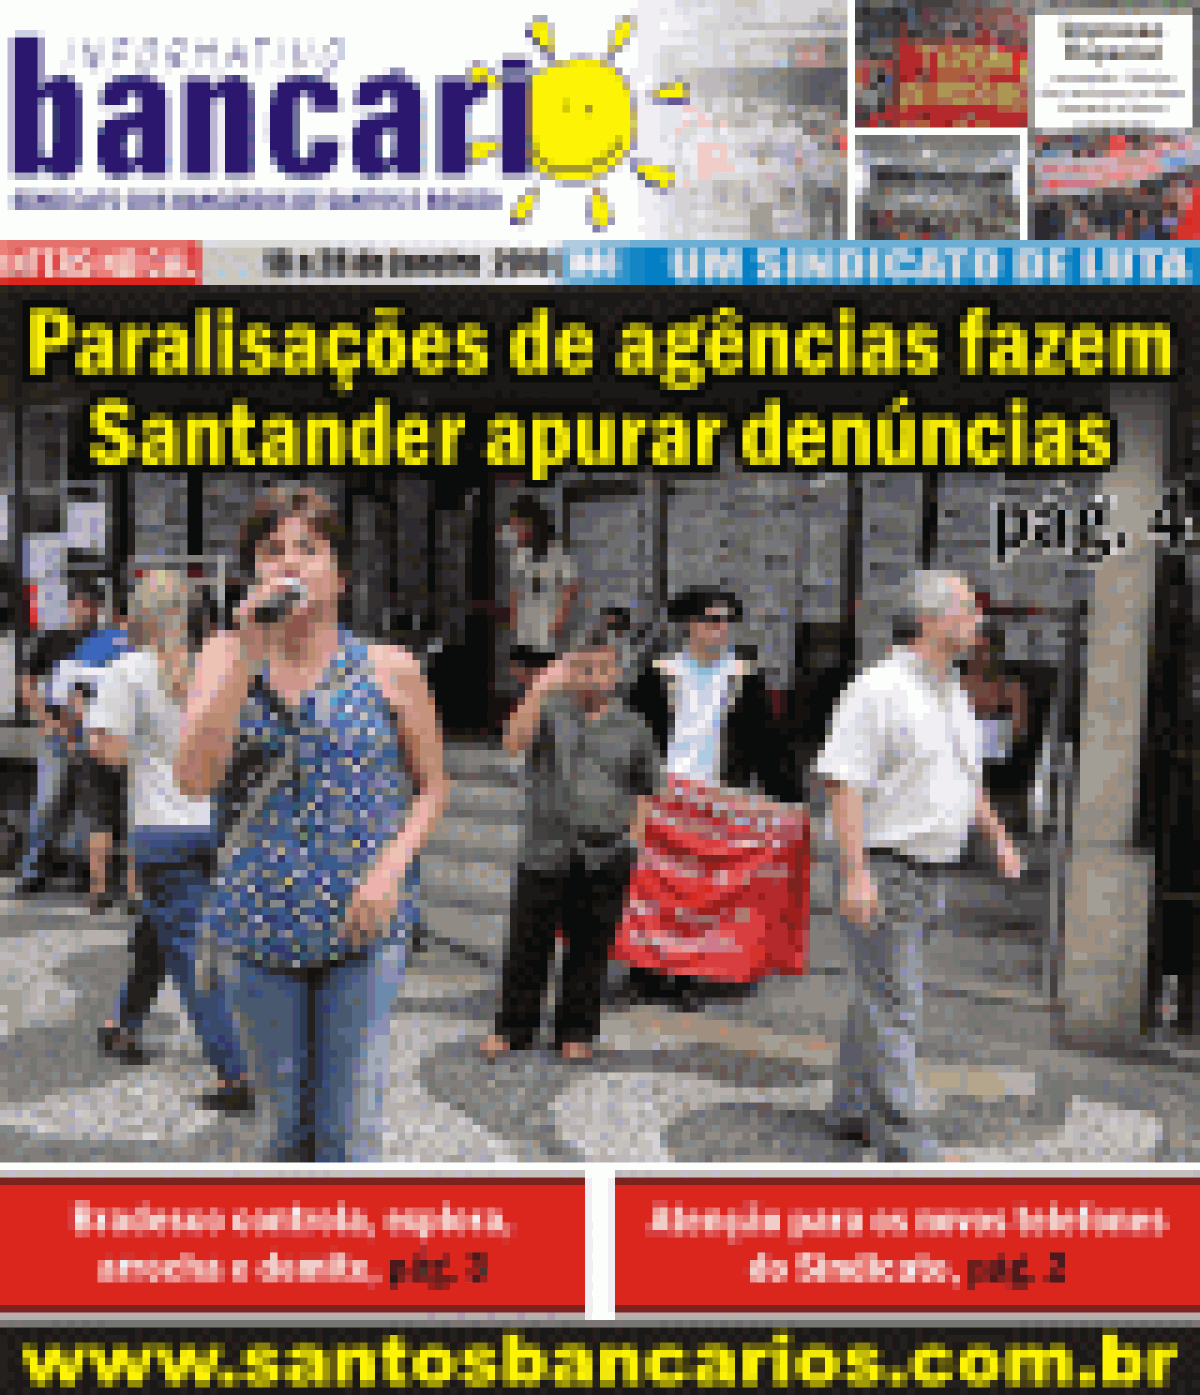 Paralisações de agências fazem Santander apurar denuncias